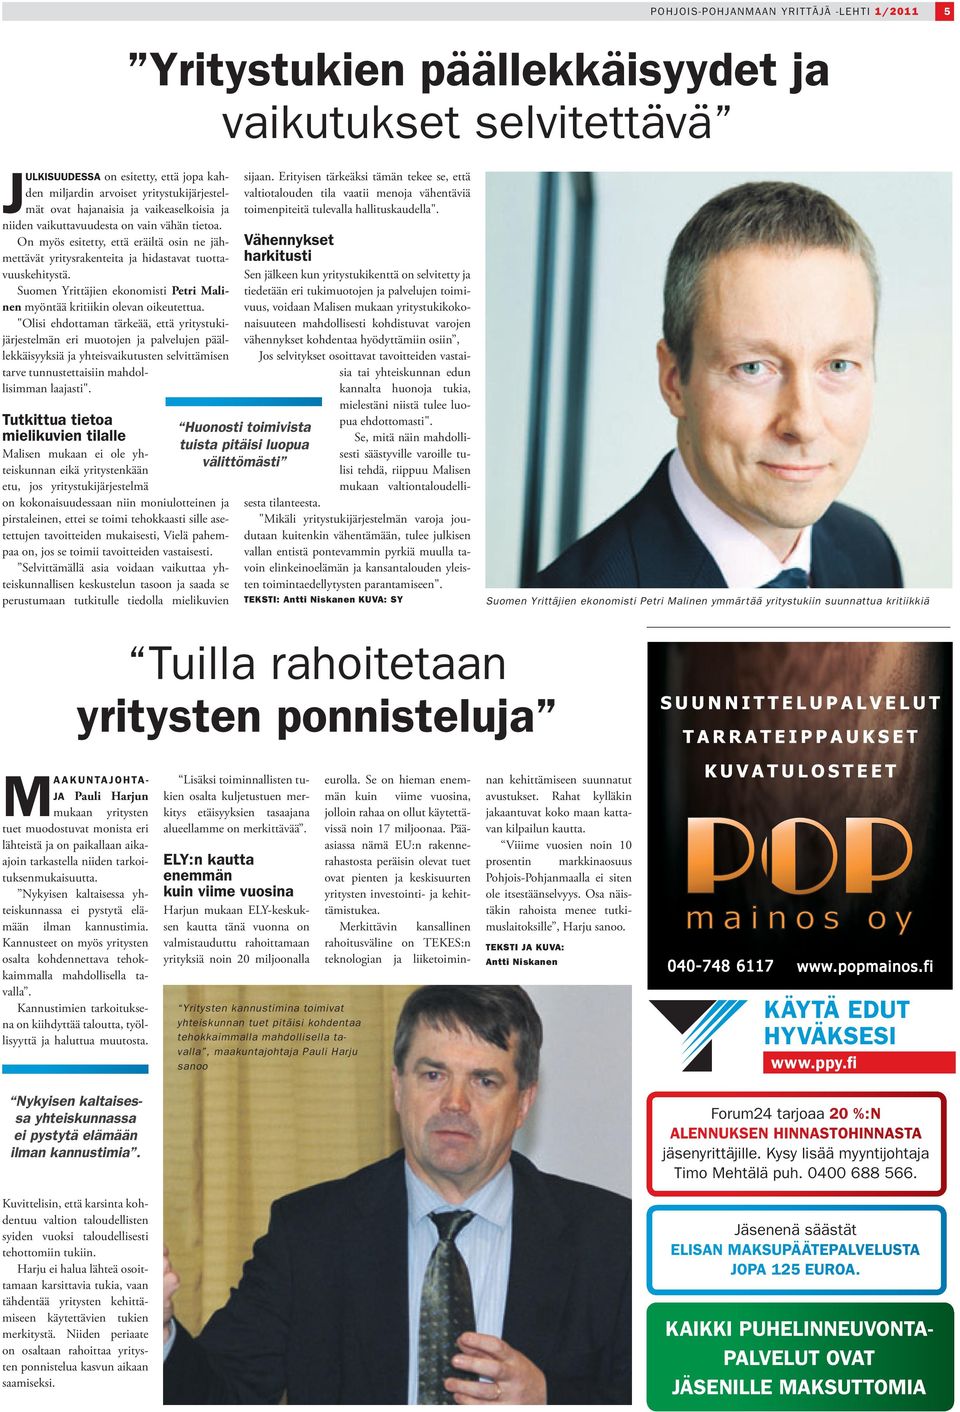 Suomen Yrittäjien ekonomisti Petri Malinen myöntää kritiikin olevan oikeutettua.